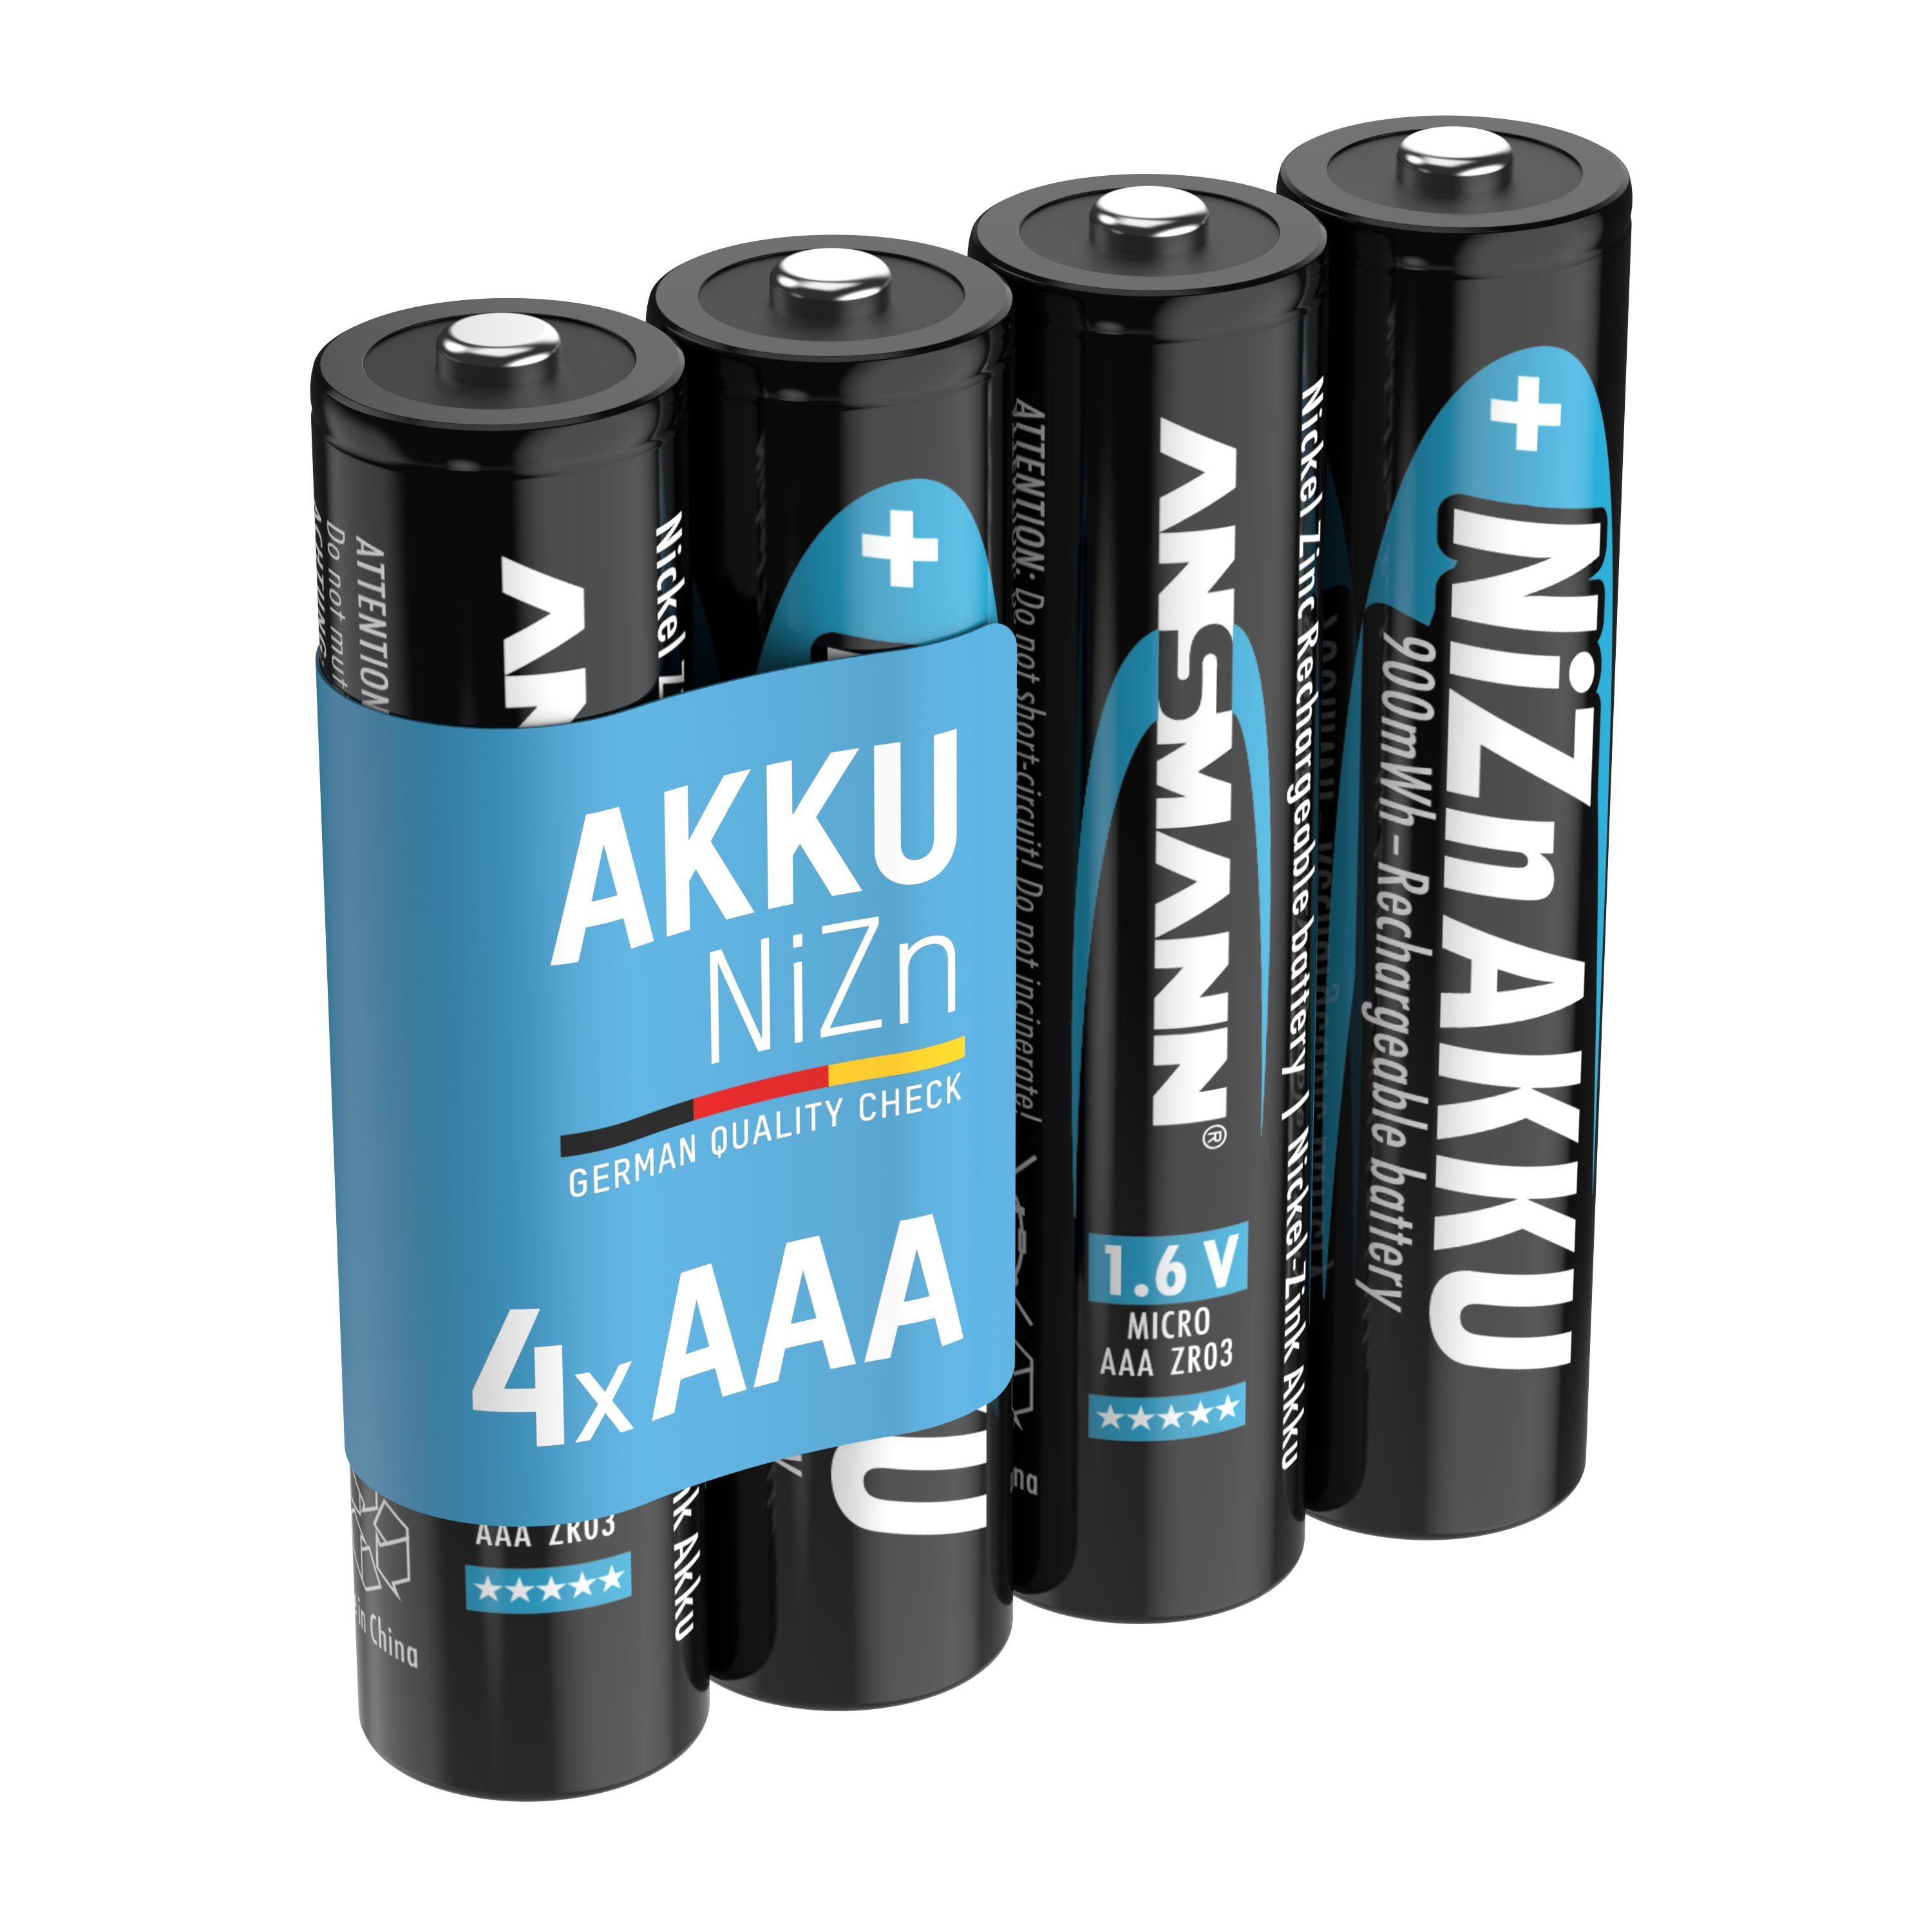 ANSMANN® Micro NiZn 550 AAA Akku Akku - Batterien 1,6V Stück 4 V) (1.6 mAh 550mWh, wiederaufladbare